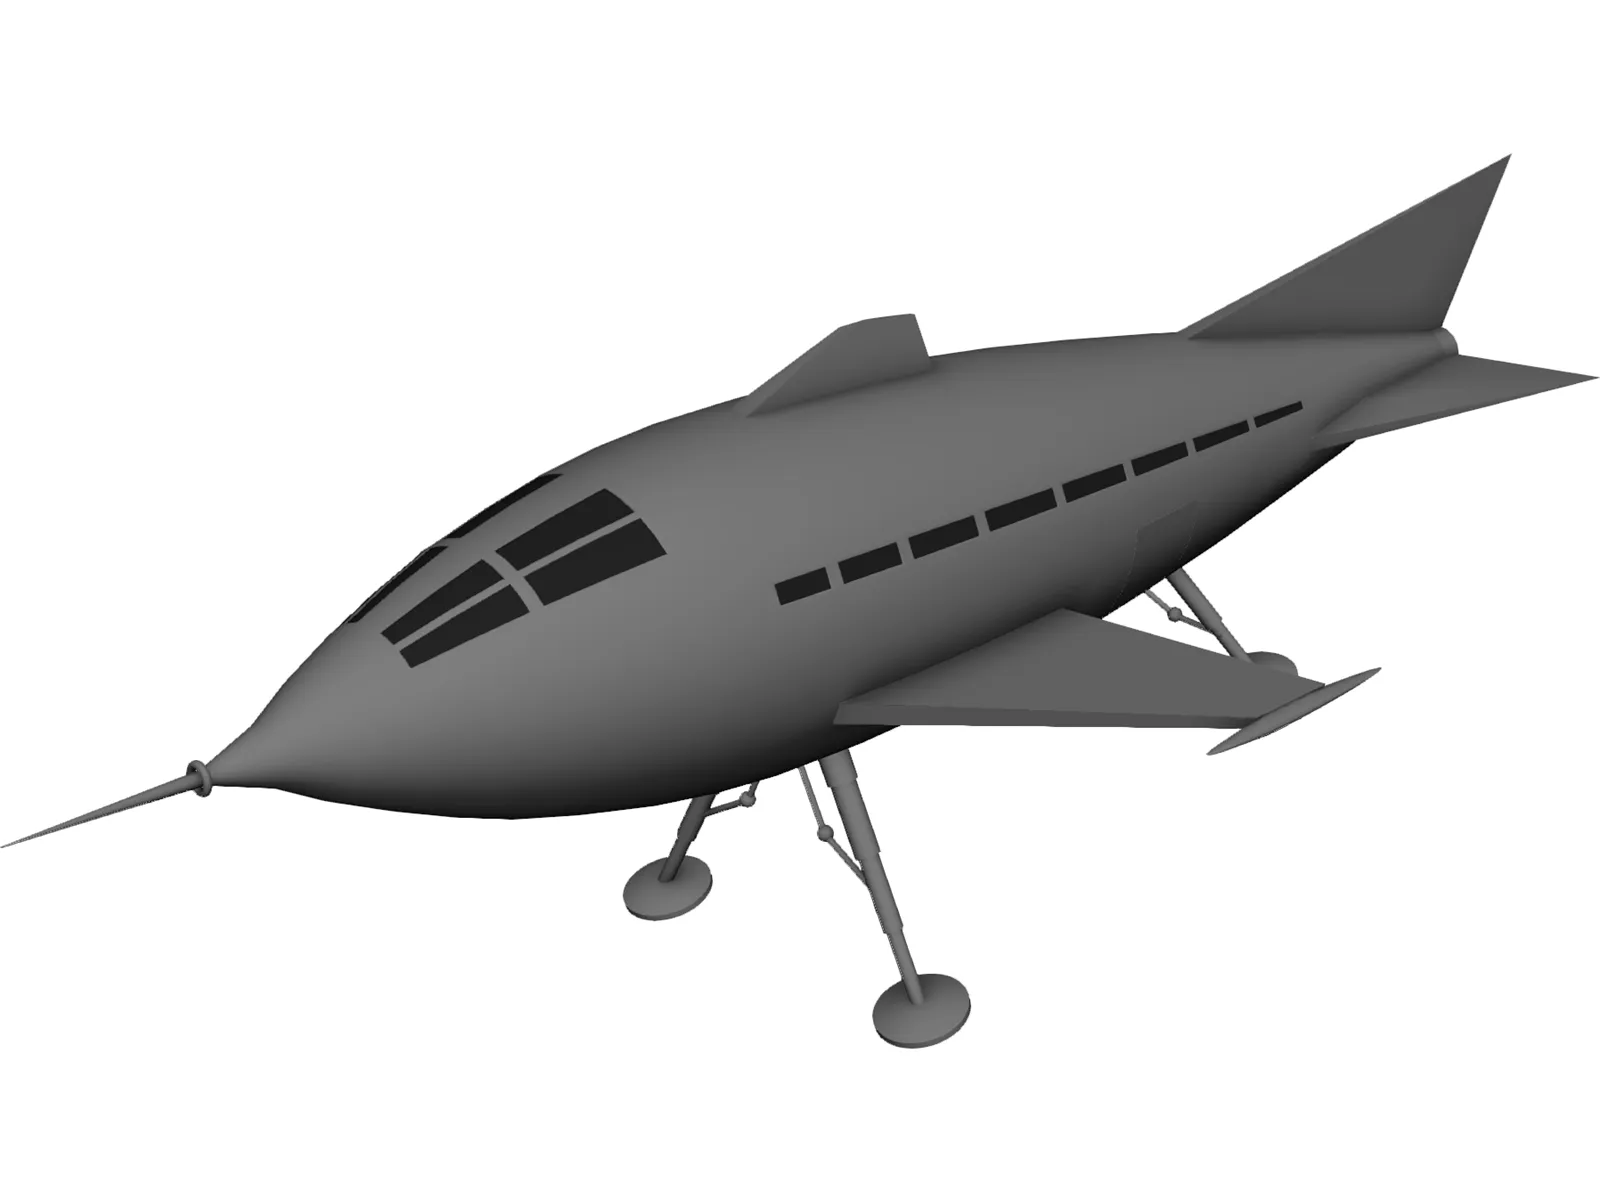 Pulp Starship 3D Model